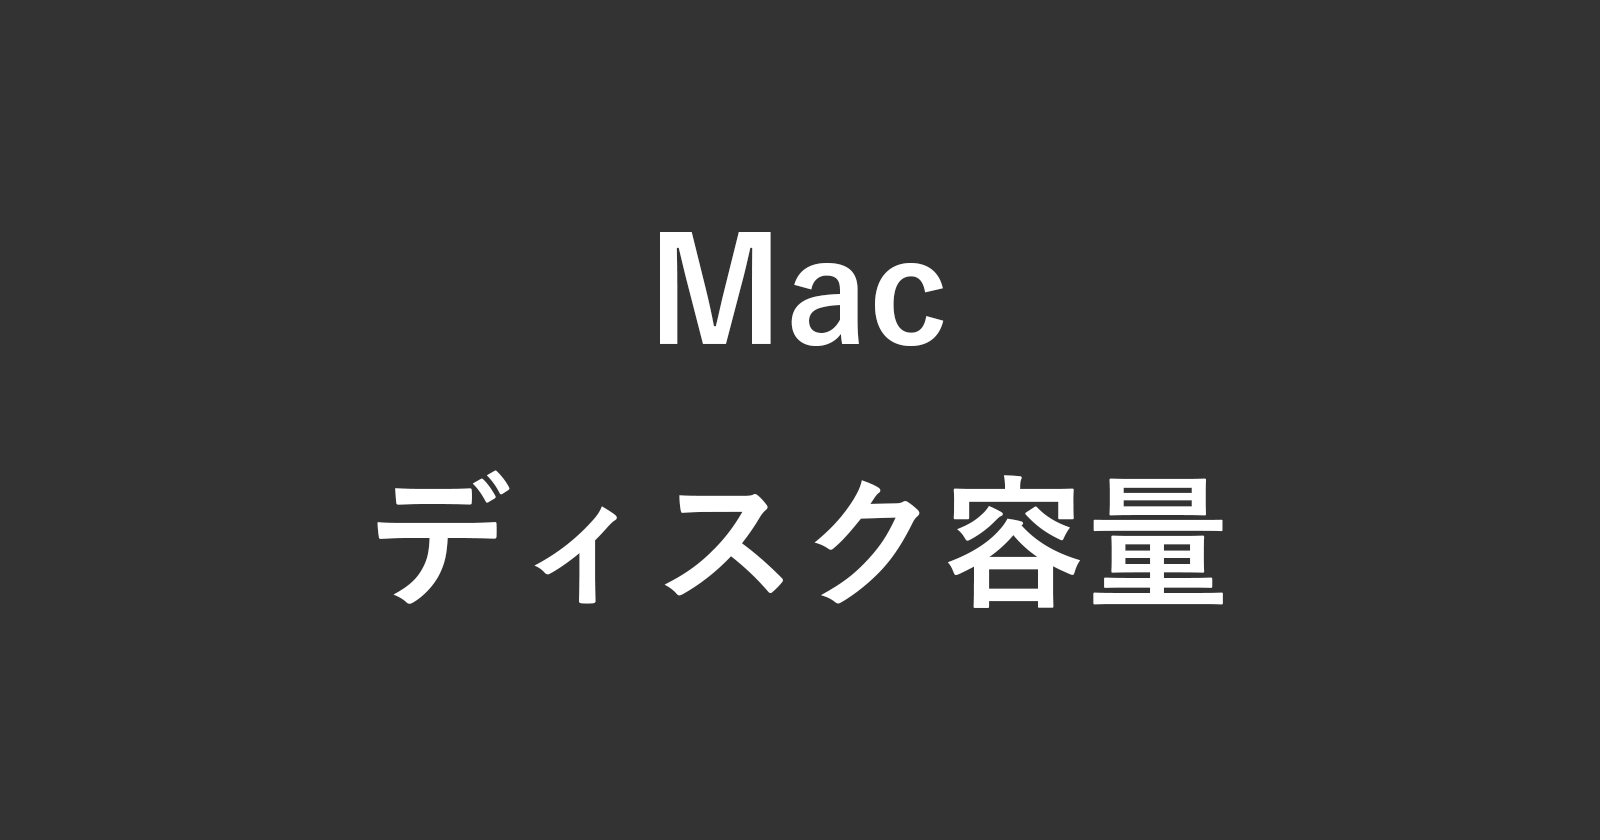 mac storage